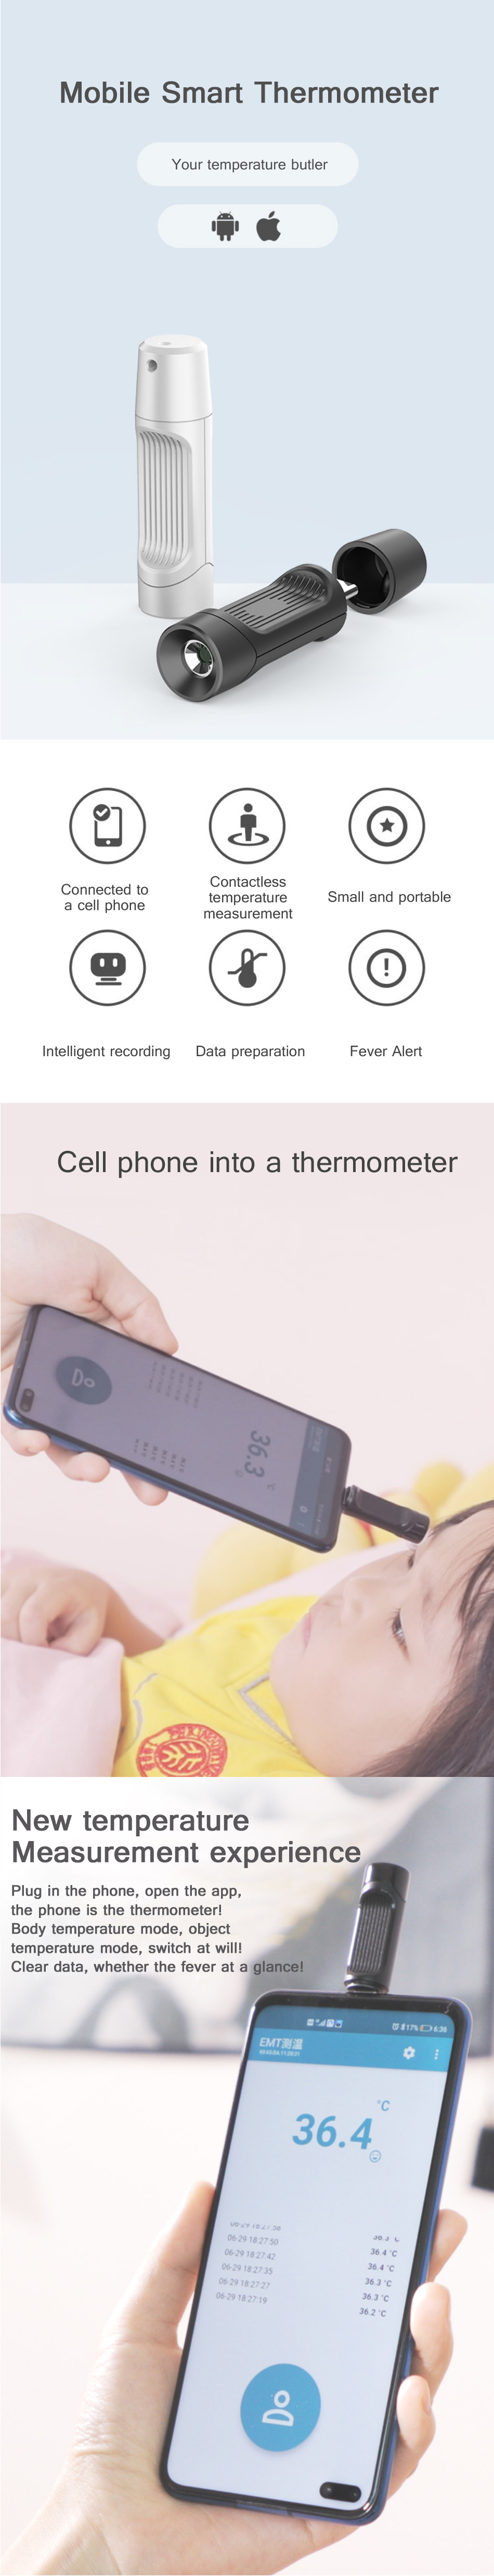 Mini-USB-Thermometer-Smart-Mobile-Phone-Digital-Thermometer-Non-contact-Infrared-Temperature-Sensor--1815251-1